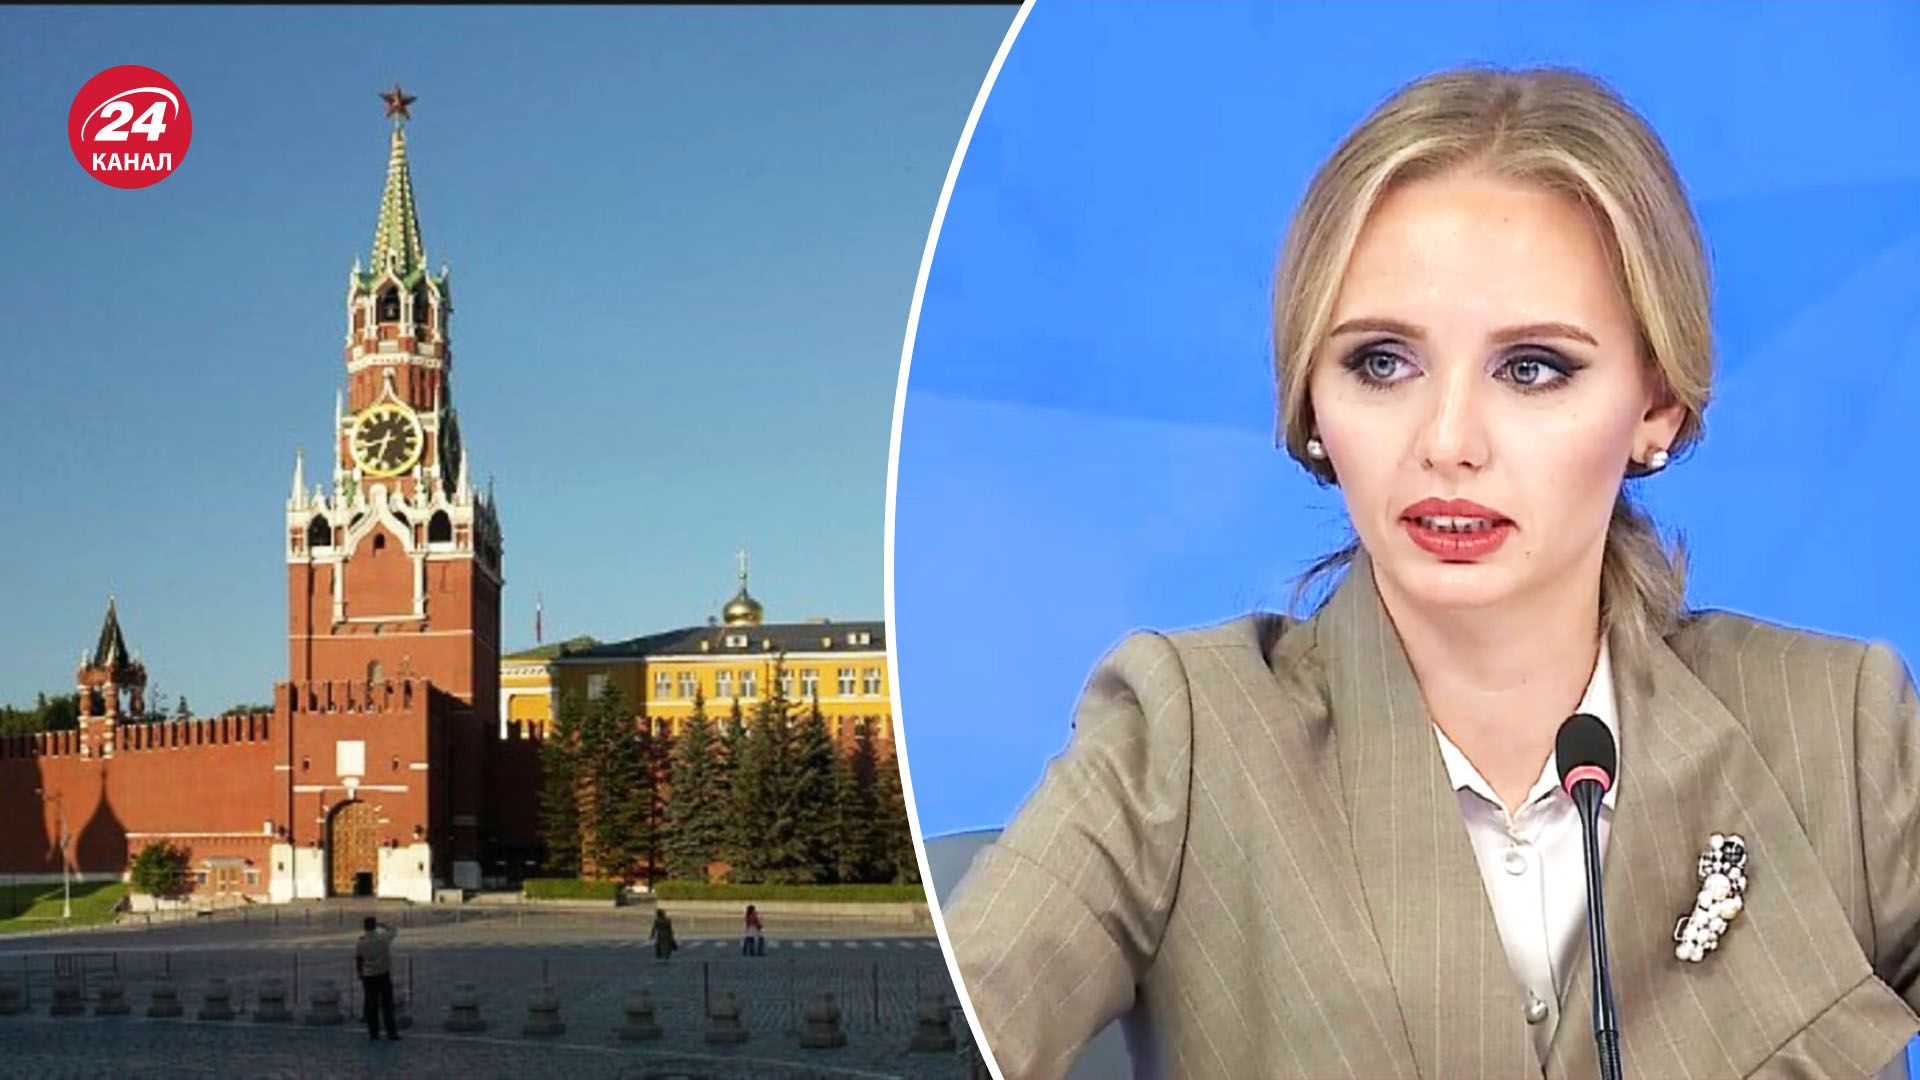 В России телеканалы начали продвигать дочерей Путина - каким может быть план диктатора - 24 Канал